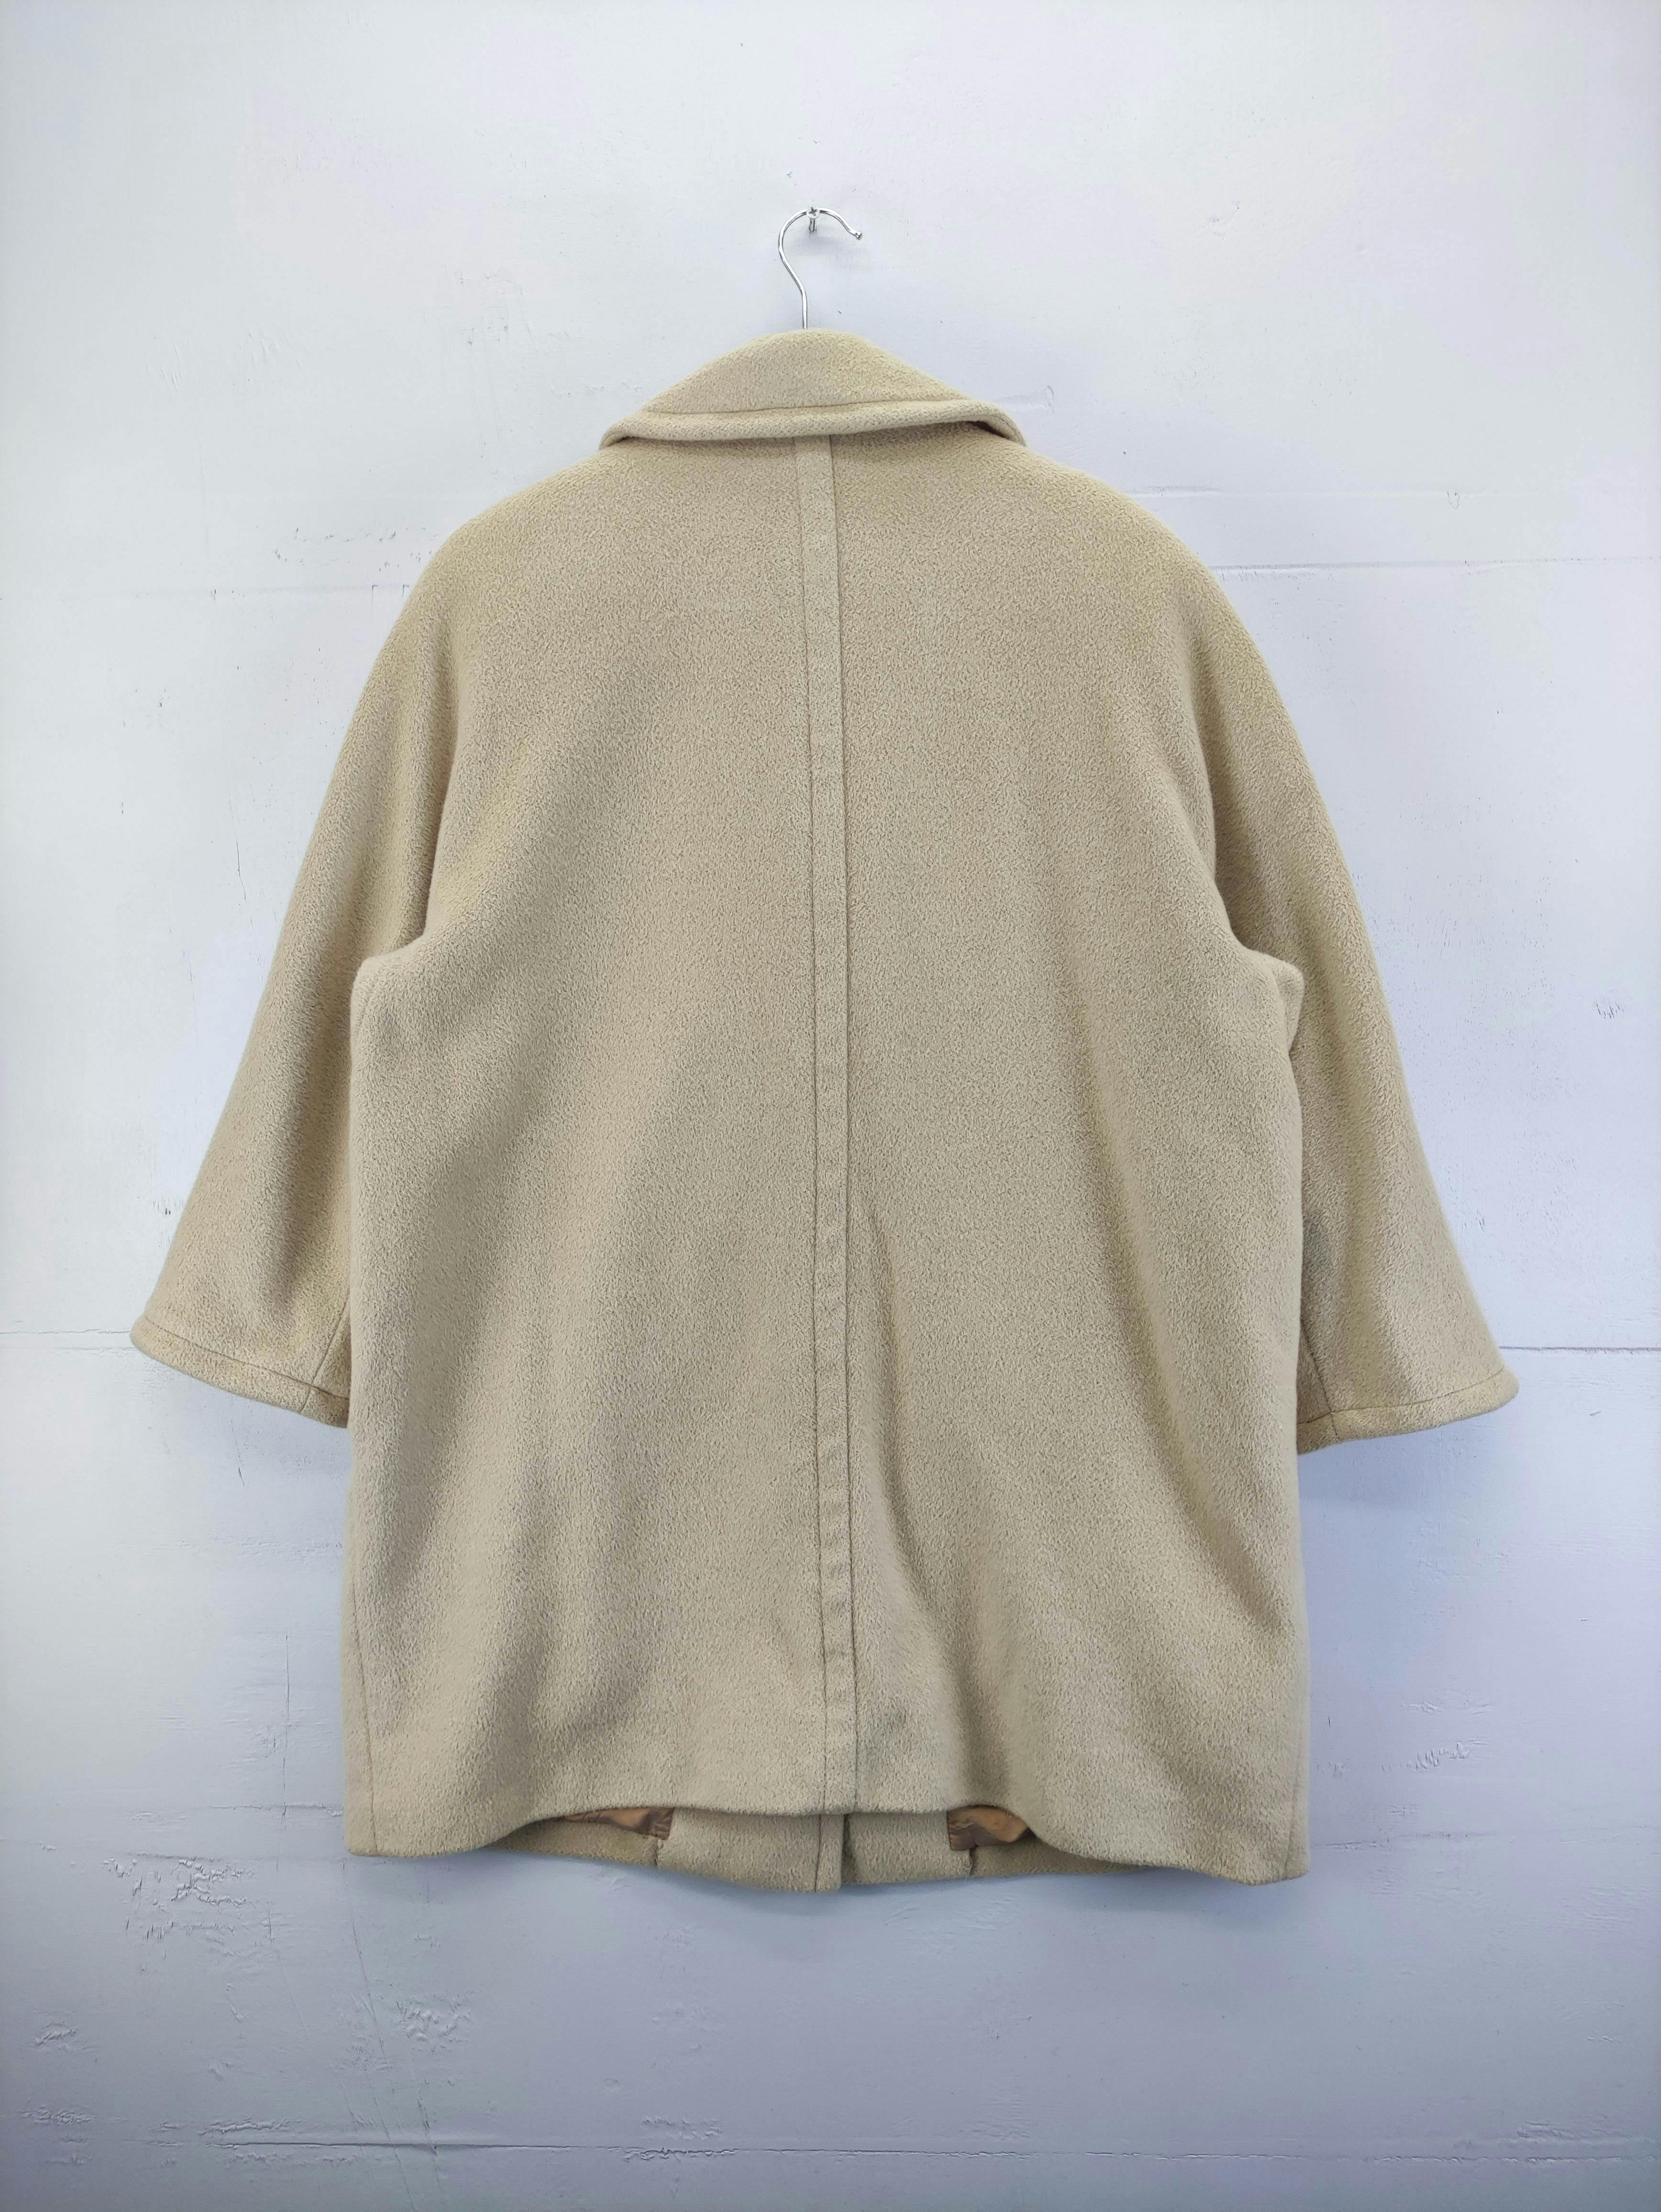 Vintage Aquascutum Wool Jacket - 10